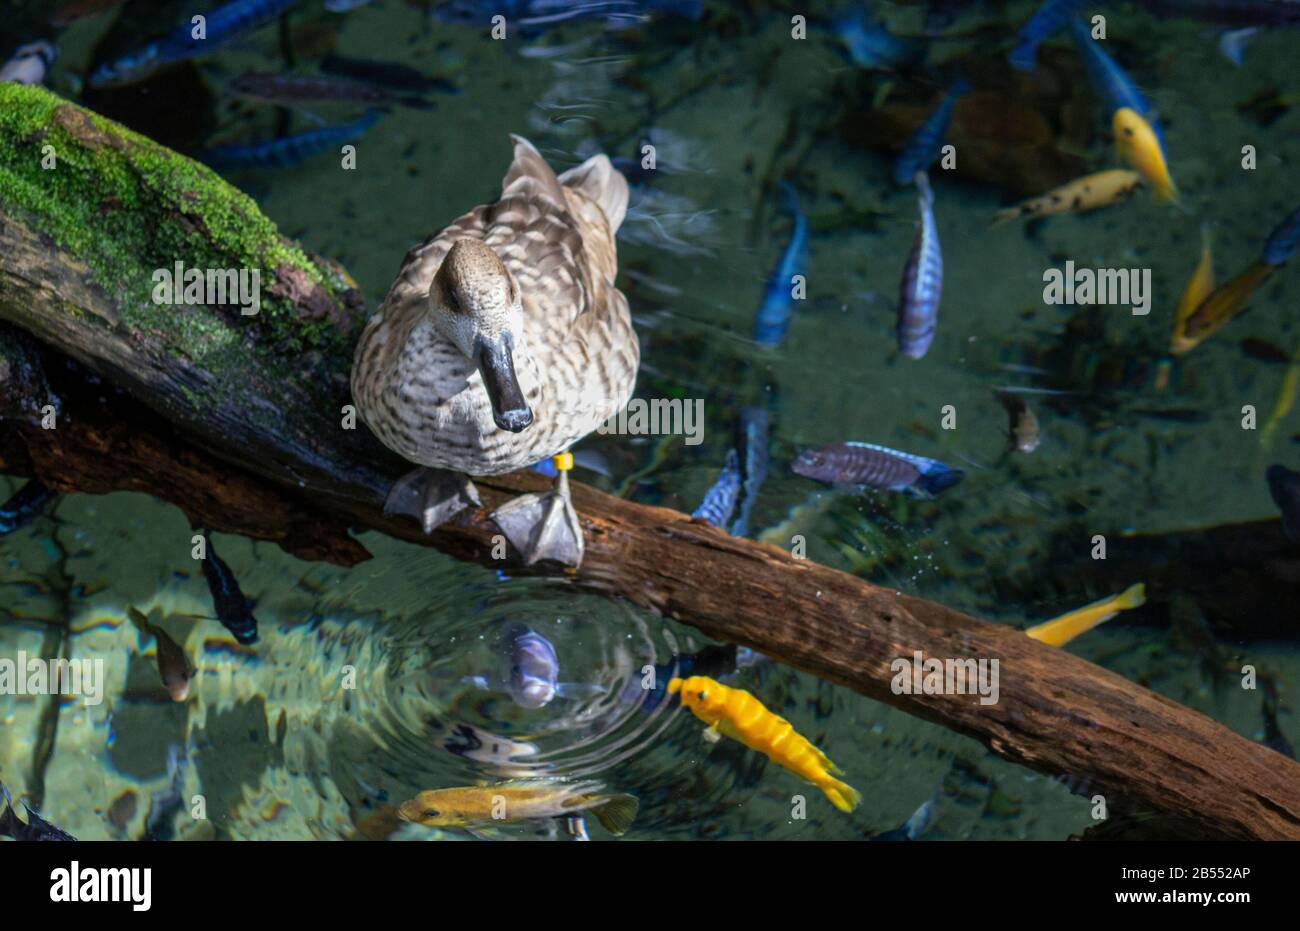 un oiseau bleu-bleu avec des taches blanches regarde les cichlides poissons nager Banque D'Images